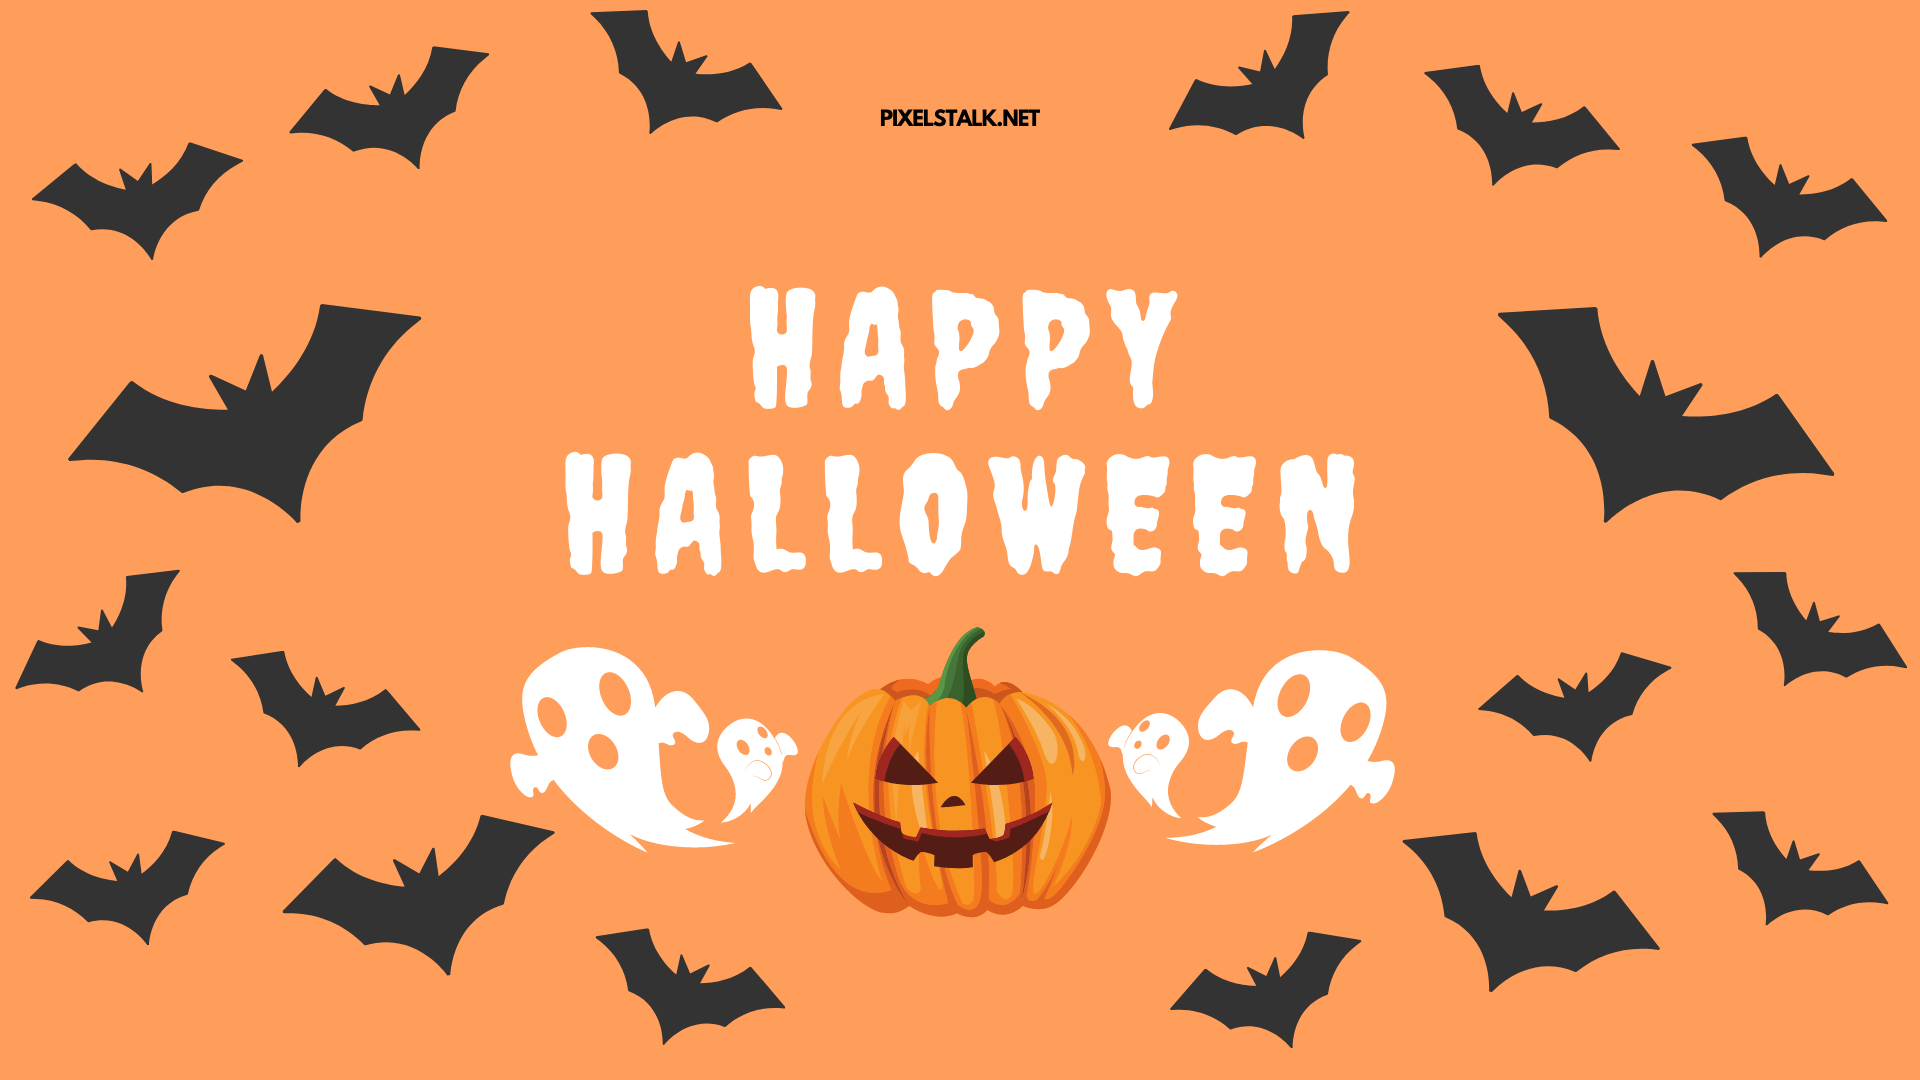 Happy halloween with bats and pumpkins - Halloween desktop